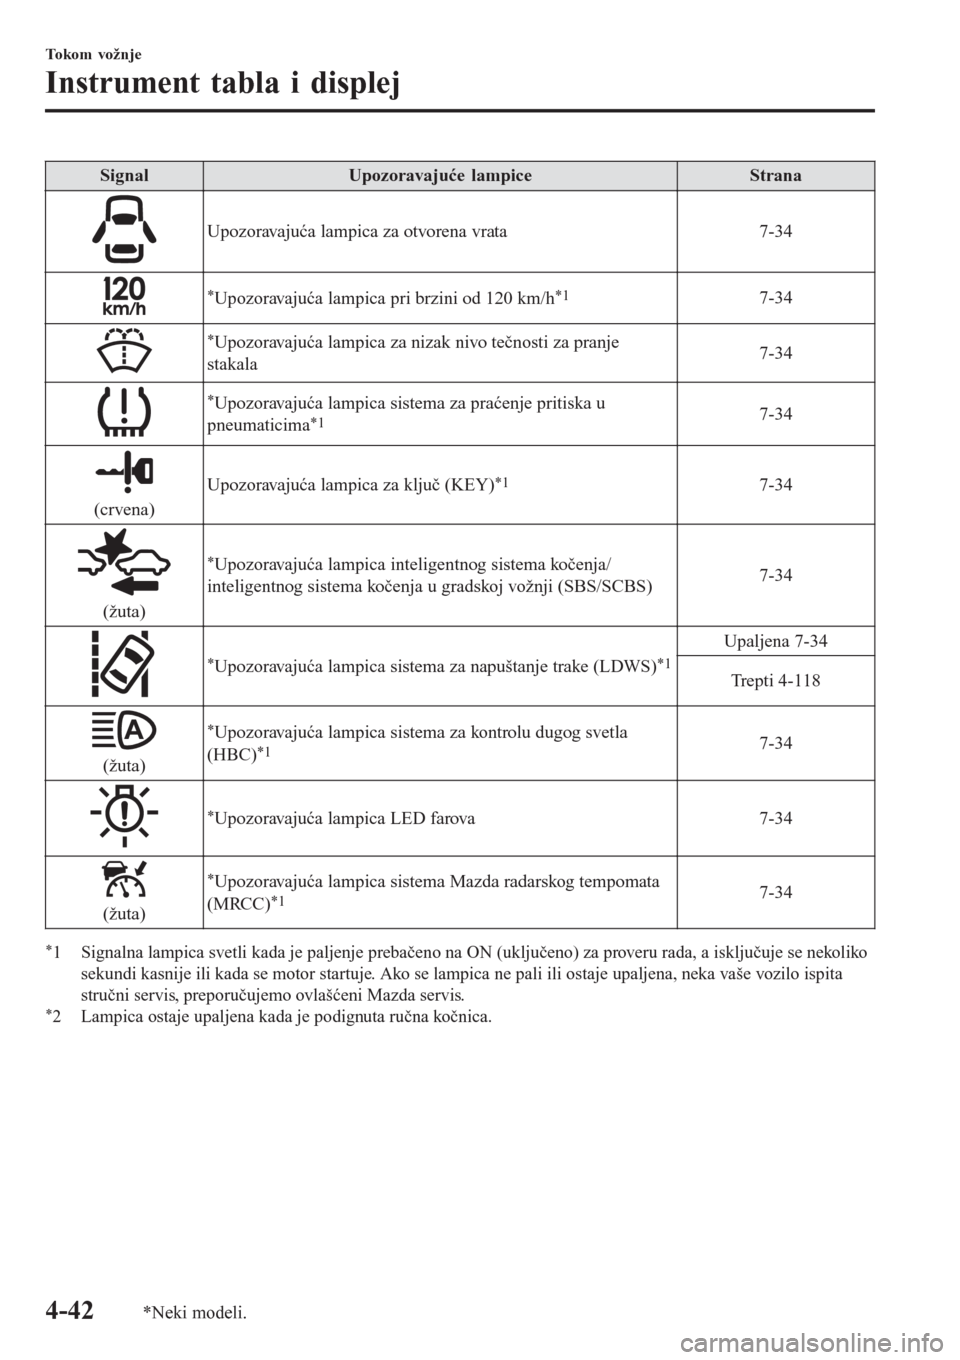 MAZDA MODEL CX-3 2016  Korisničko uputstvo (in Serbian) Signal Upozoravajuće lampice Strana
Upozoravajuća lampica za otvorena vrata 7-34
*Upozoravajuća lampica pri brzini od 120 km/h*17-34
*Upozoravajuća lampica za nizak nivo tečnosti za pranje
stakal